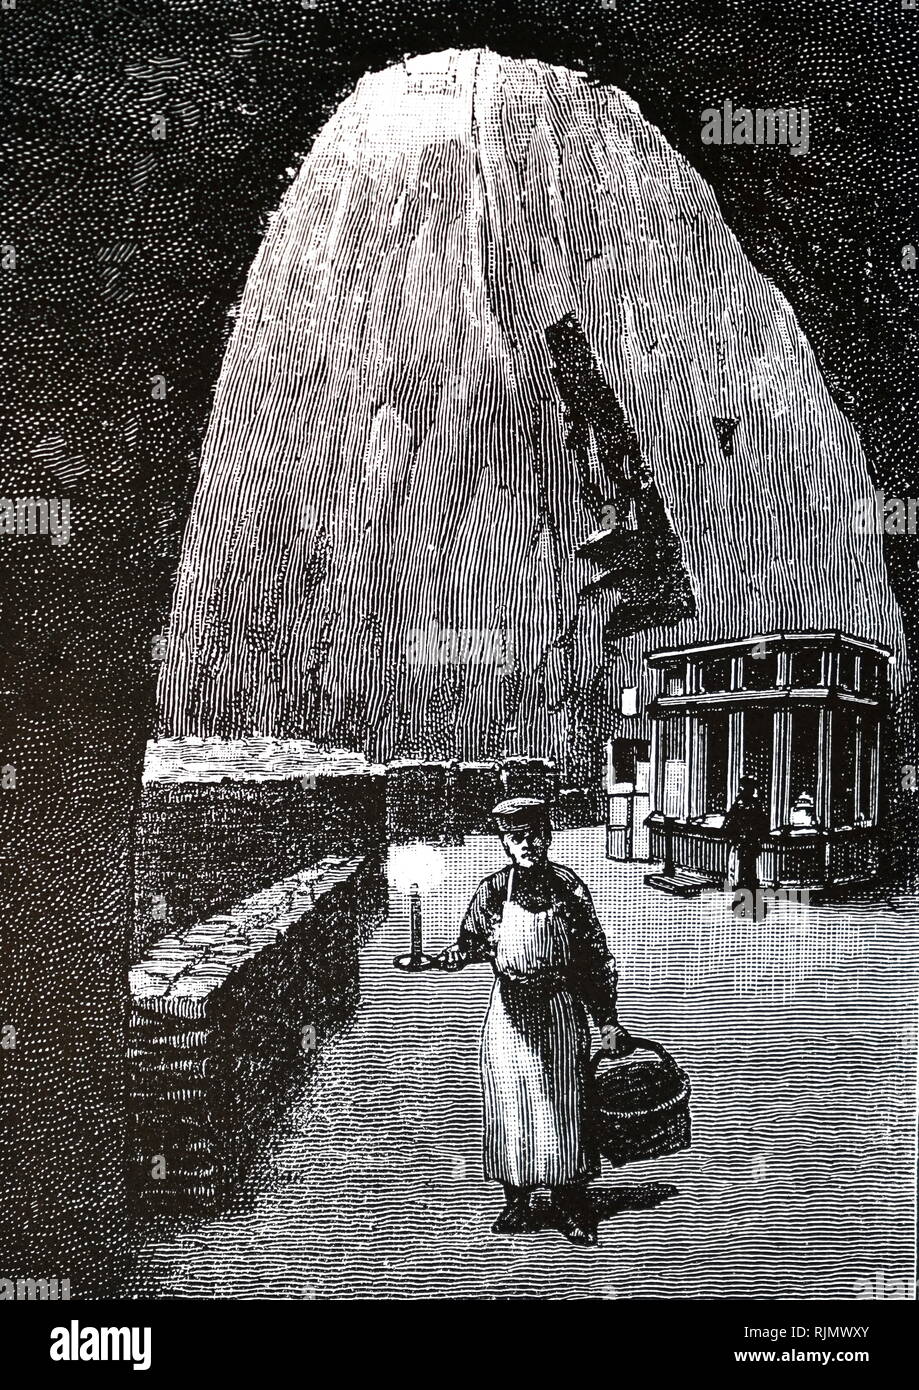 Une gravure illustrant le Champagne Pommery & Greno grottes, Reims. La France. 1889 Banque D'Images